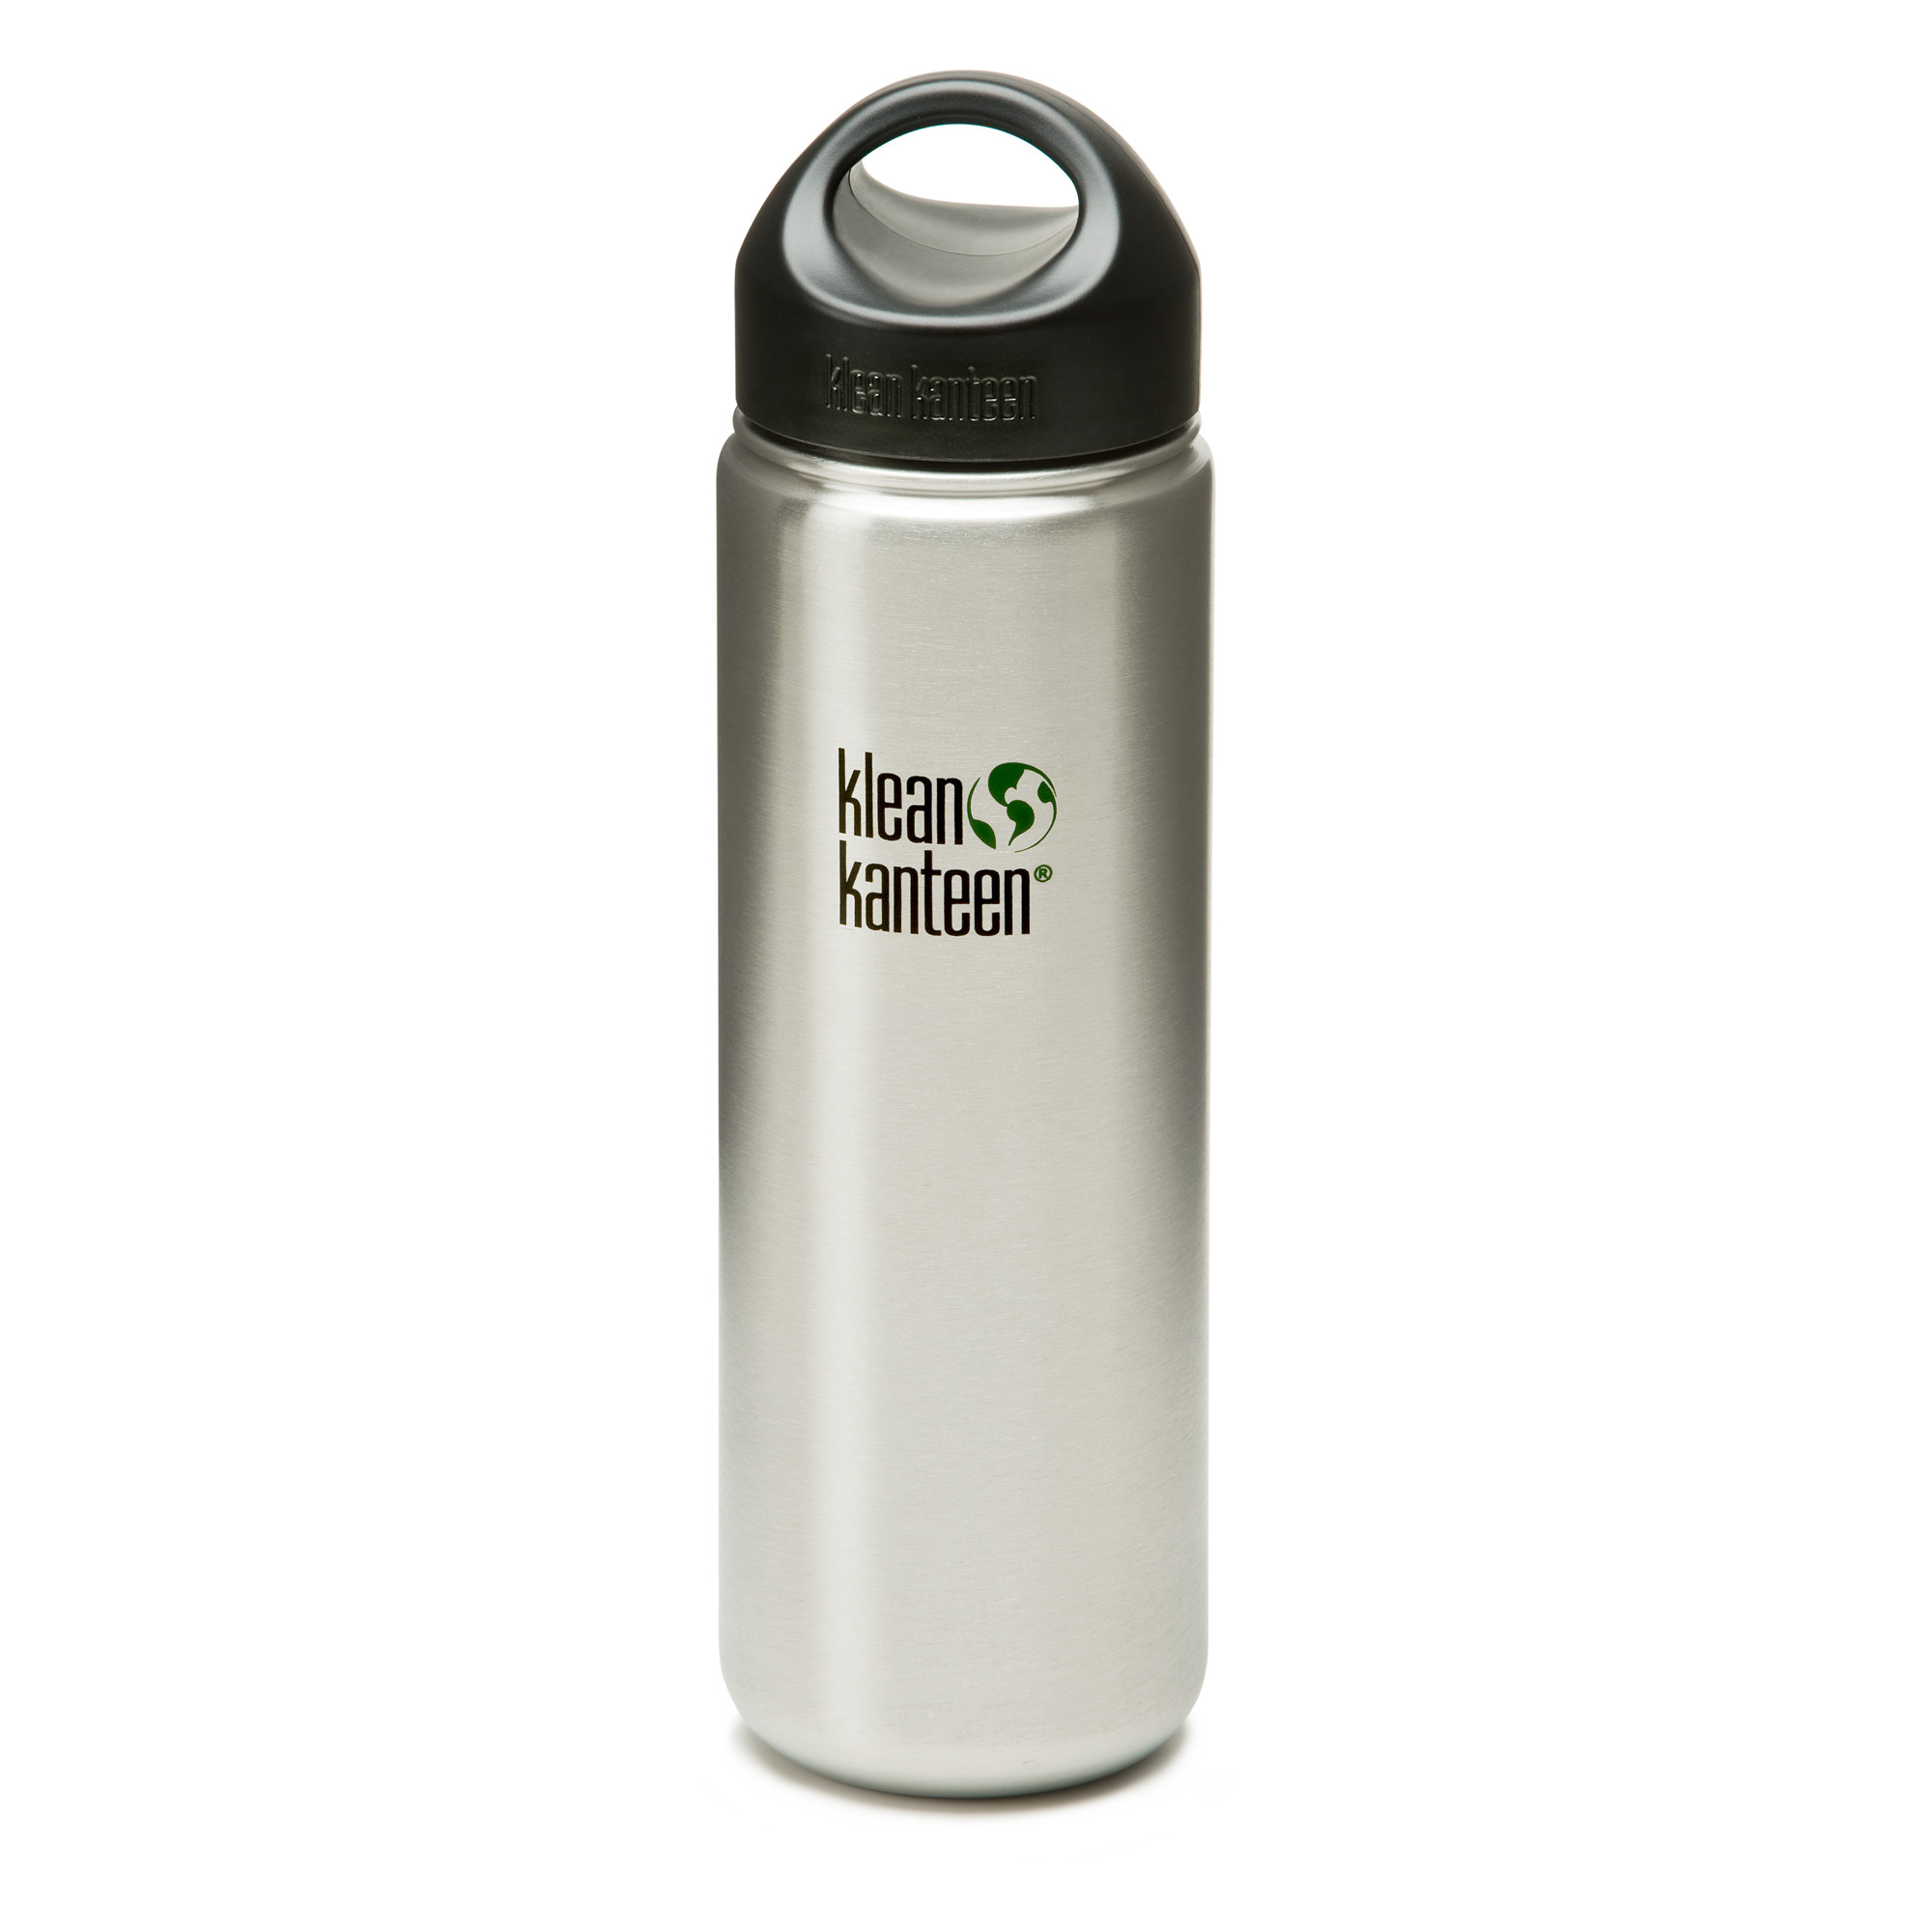 Klean Kanteen Wide - Stainless Steel water bottle with loop cap | eBay Klean Kanteen Stainless Steel Water Bottle